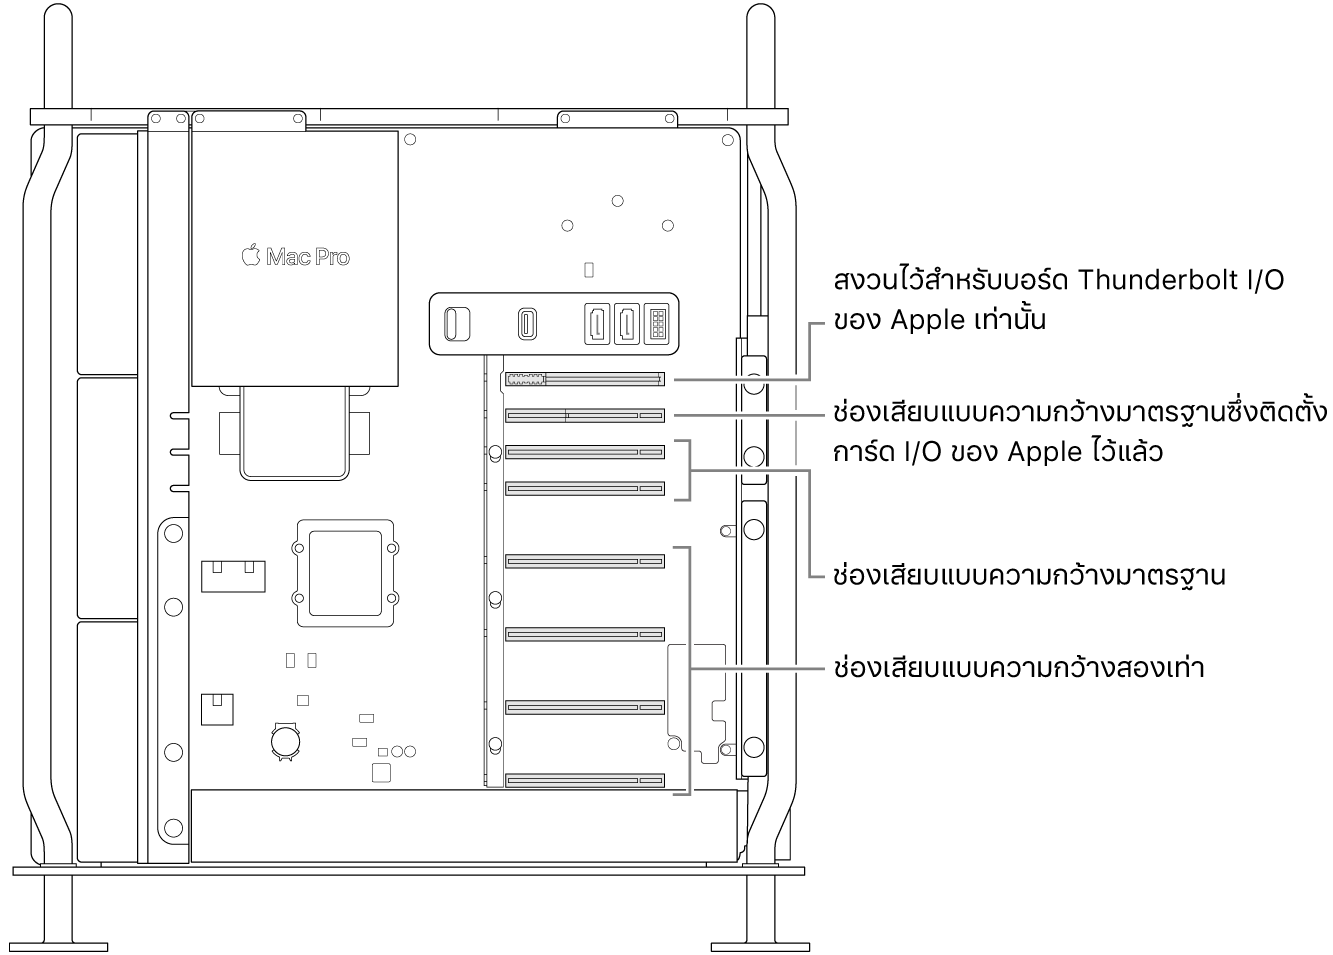 ด้านข้างของ Mac Pro ที่เปิดออกโดยมีตัวชี้บรรยายแสดงให้เห็นตำแหน่งของช่องเสียบแบบความกว้างสองเท่าสี่ช่อง ช่องเสียบแบบความกว้างมาตรฐานสองช่อง ช่องเสียบแบบความกว้างมาตรฐานสำหรับการ์ด Apple I/O และช่องเสียบสำหรับบอร์ด Thunderbolt I/O